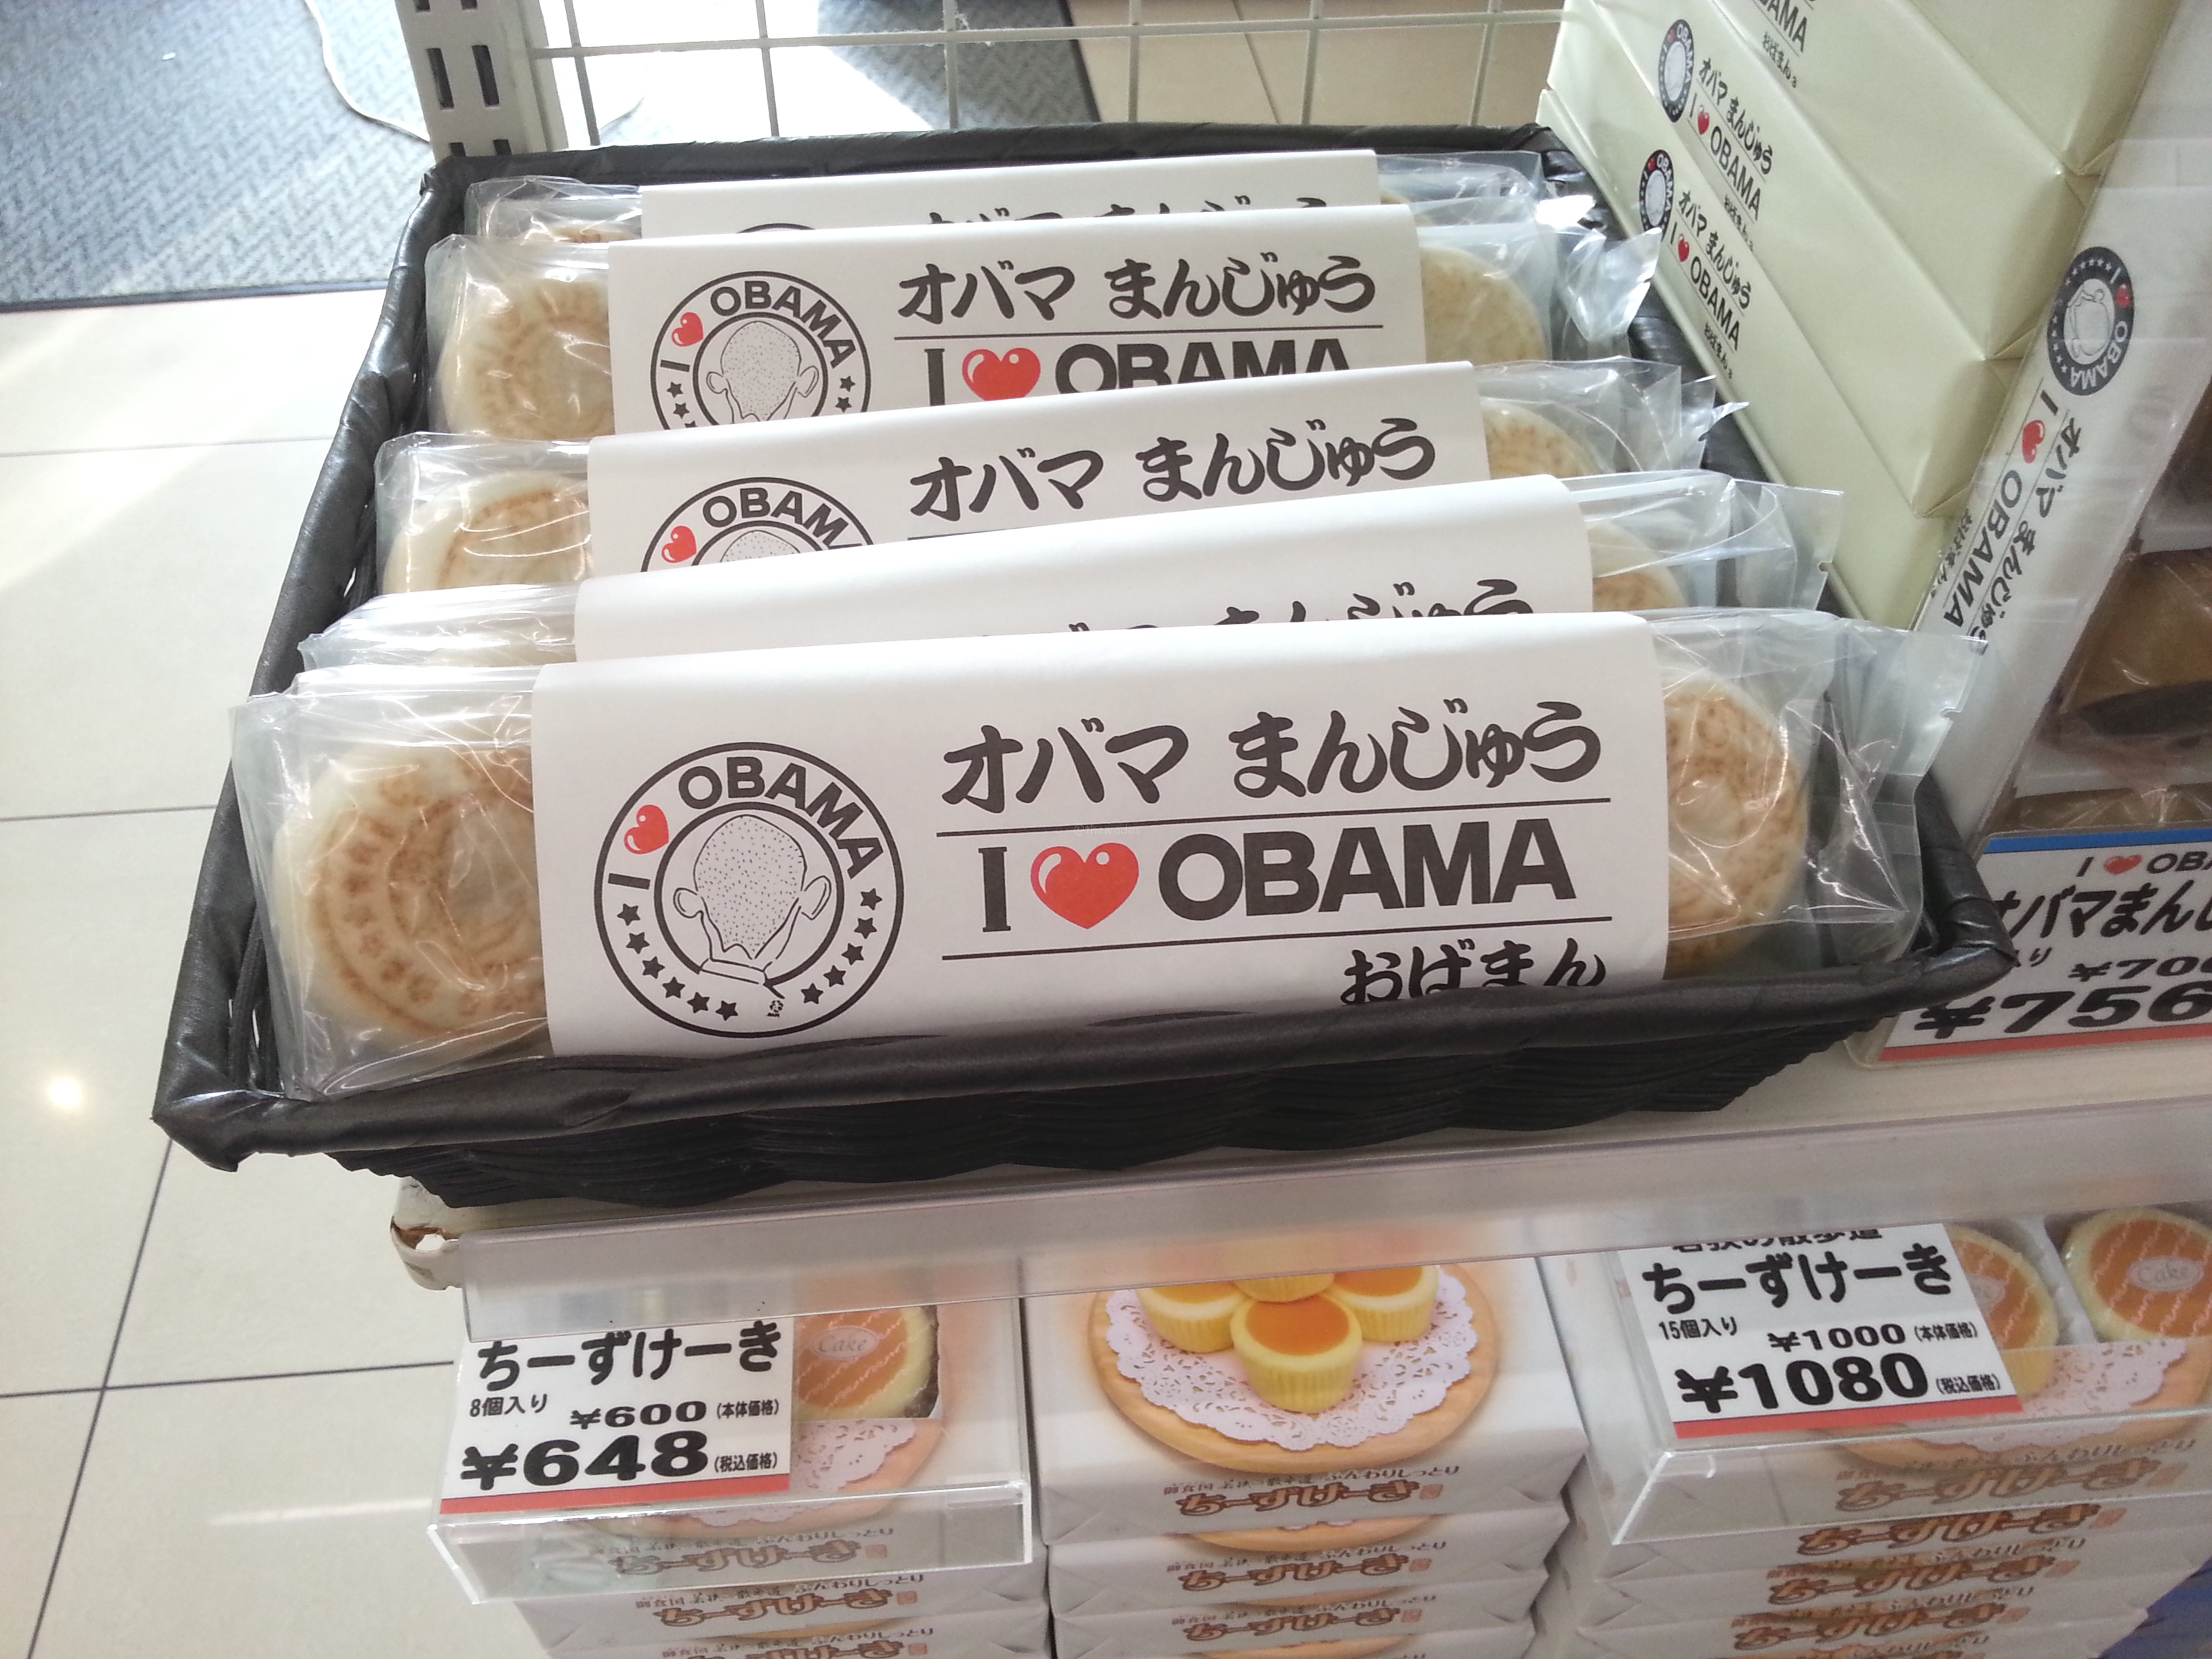 Obama City, Japan: Obaman souvenir